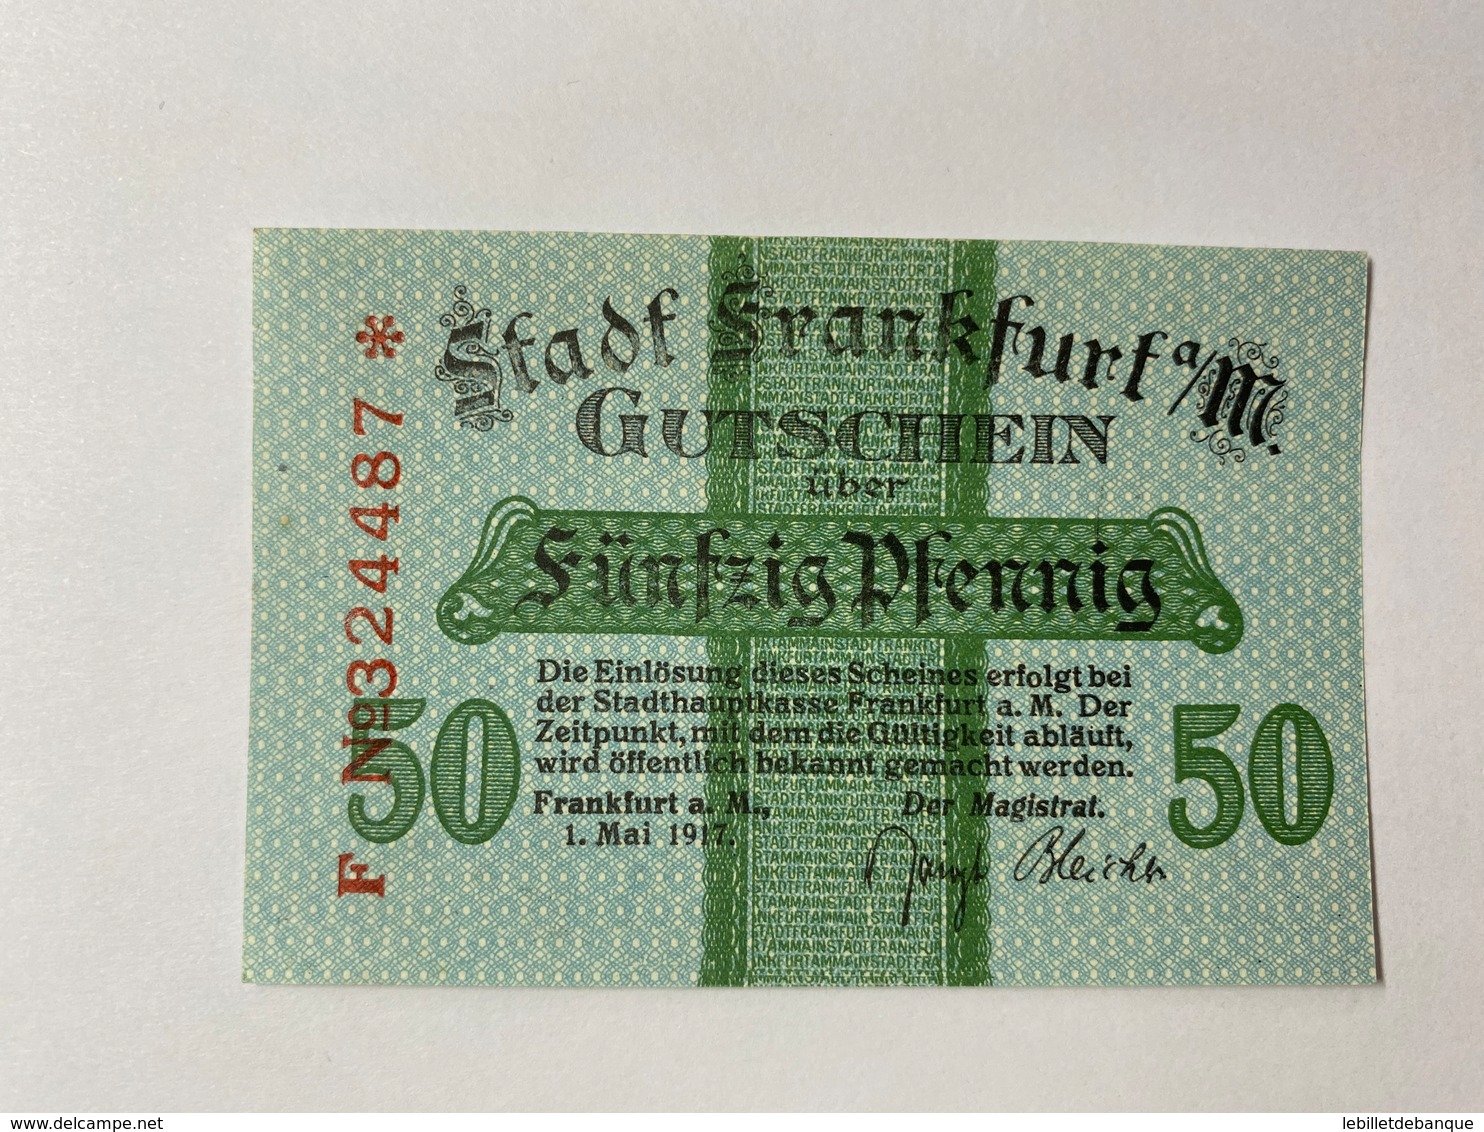 Allemagne Notgeld Frankfurt 50 Pfennig - Collections